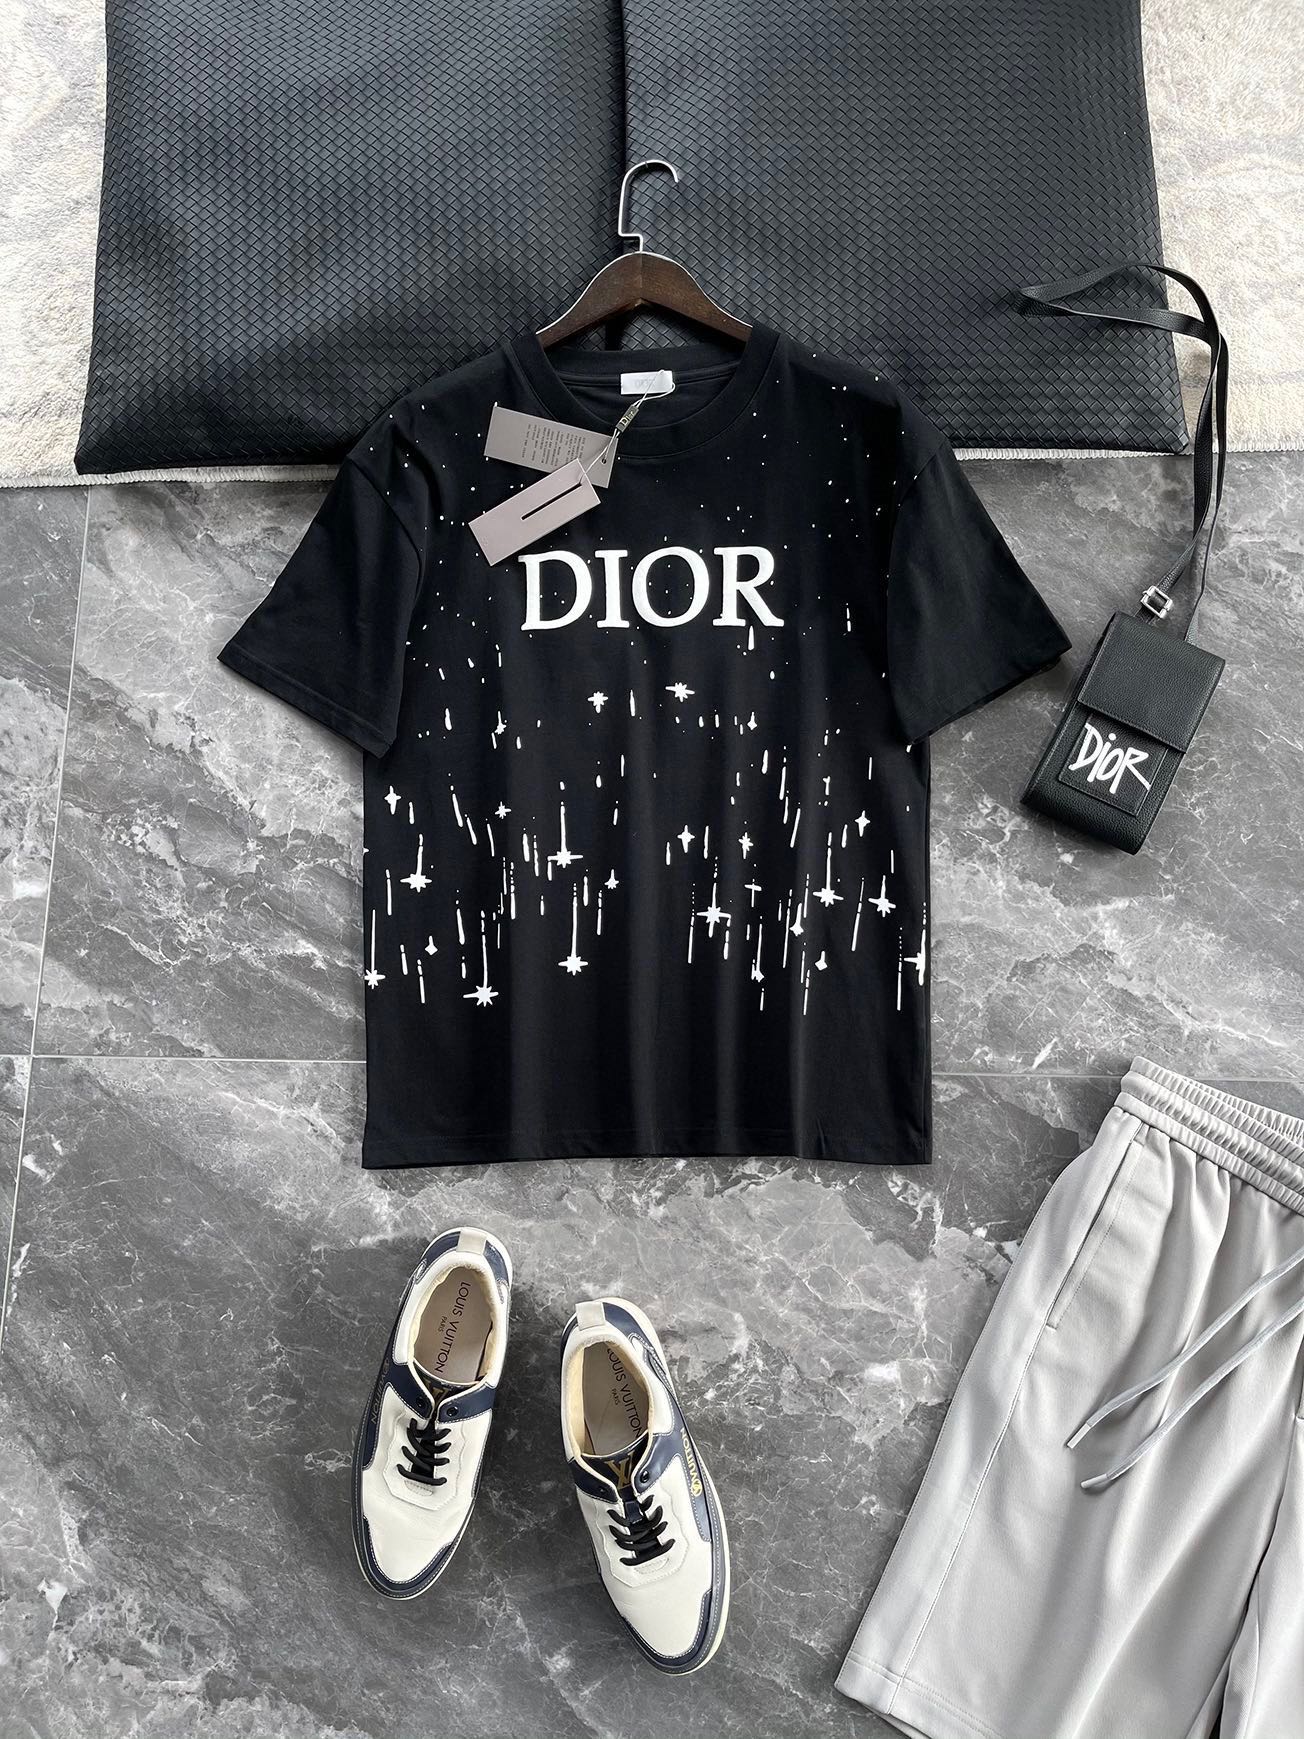 Dior Acheter
 Vêtements T-Shirt Noir Blanc Imprimé Unisexe Coton tricoté Tricot Collection printemps – été Fashion Manches courtes